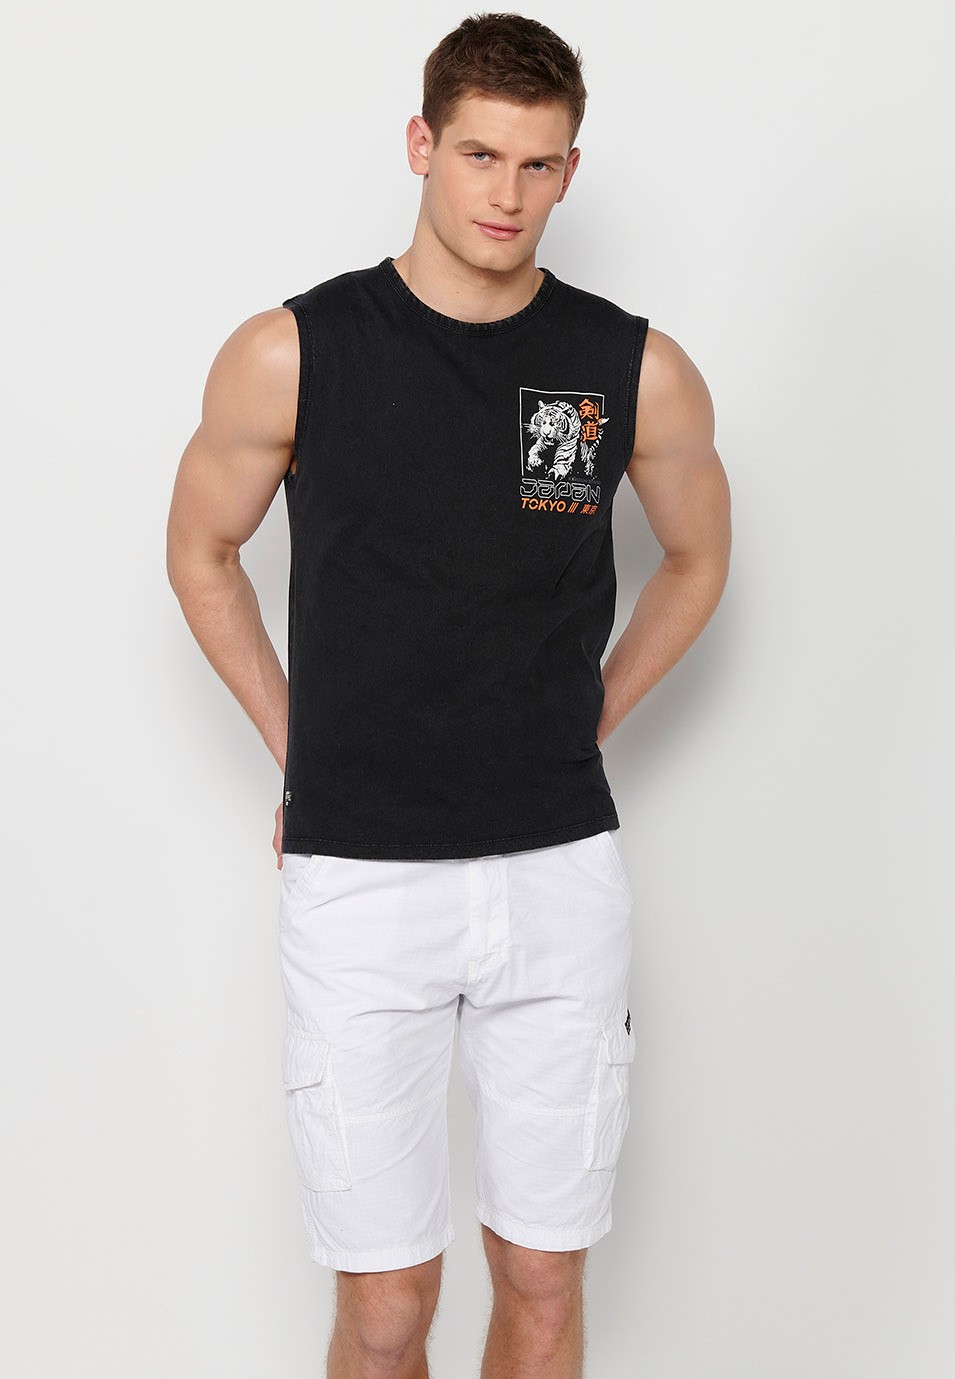 Ärmelloses T-Shirt, Rückendruck „Jungle Fury“, schwarz für Herren